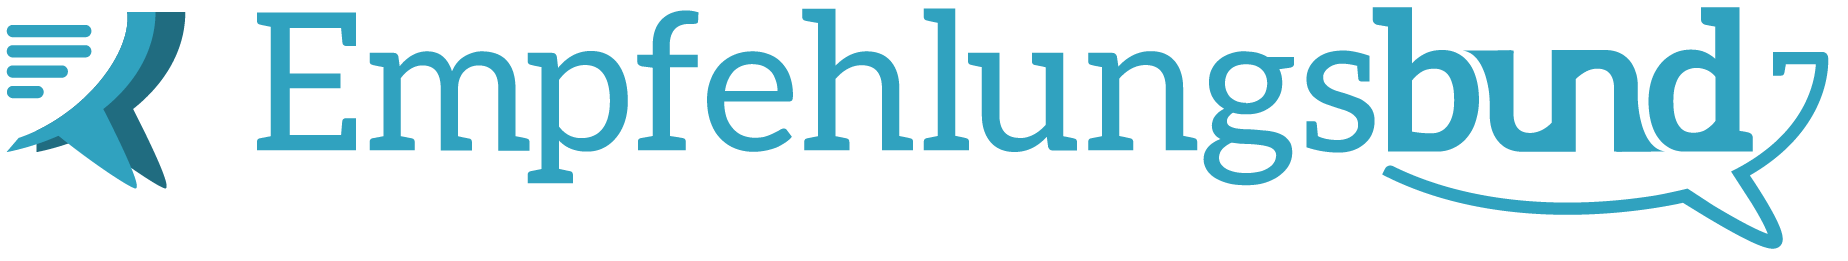 Empfehlungsbund Logo